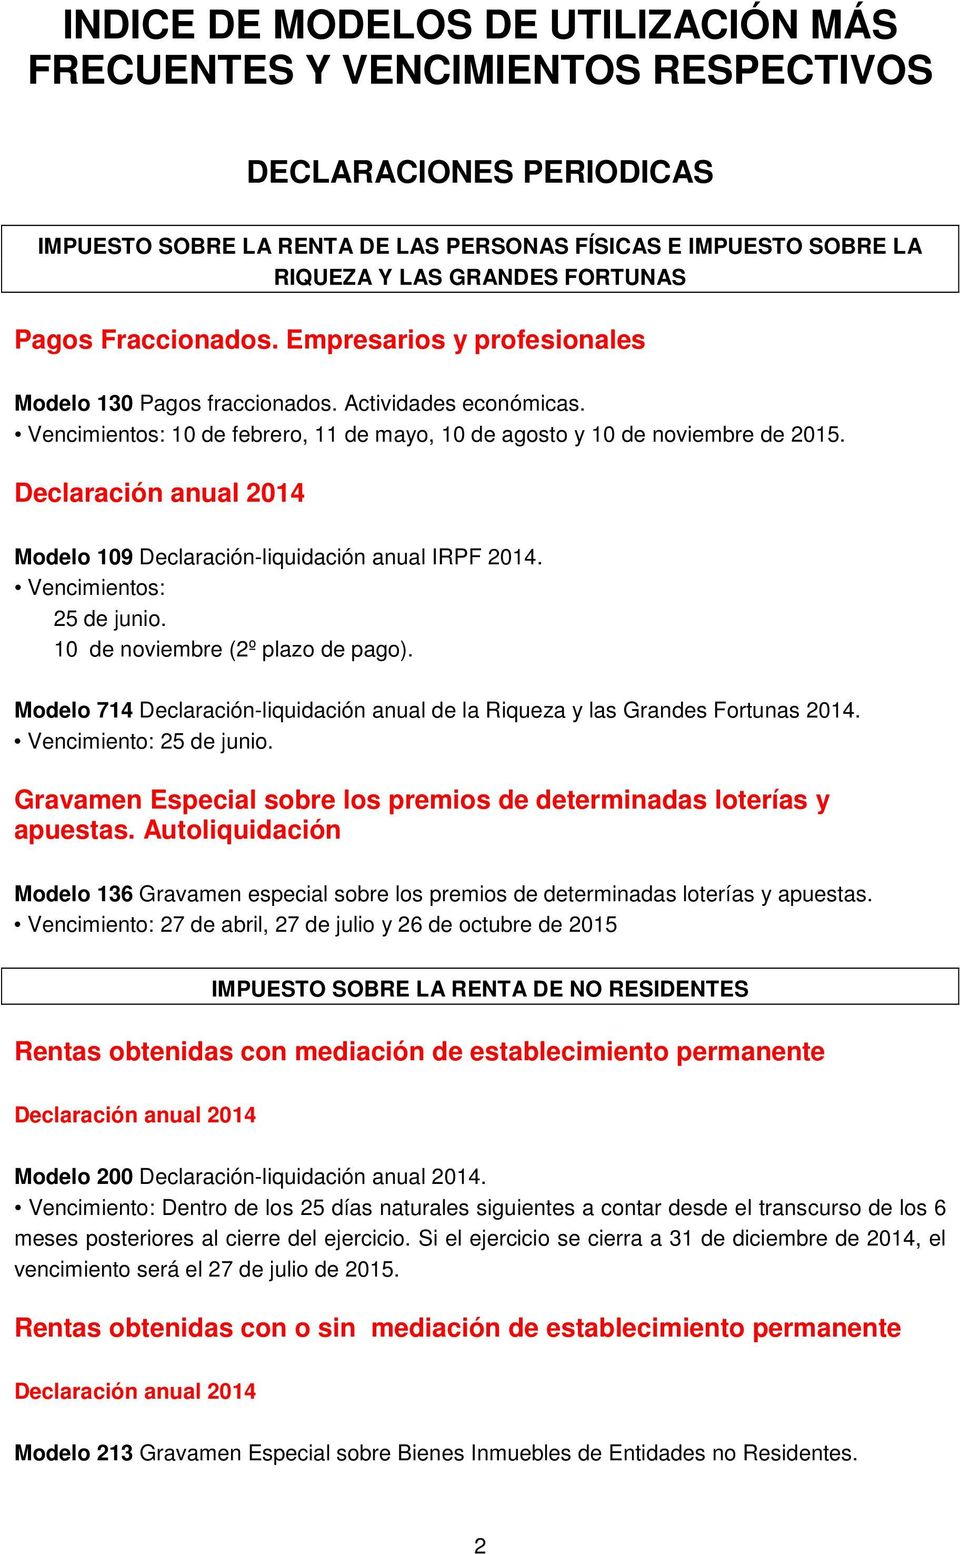 Declaración anual 2014 Modelo 109 Declaración-liquidación anual IRPF 2014. Vencimientos: 25 de junio. 10 de noviembre (2º plazo de pago).